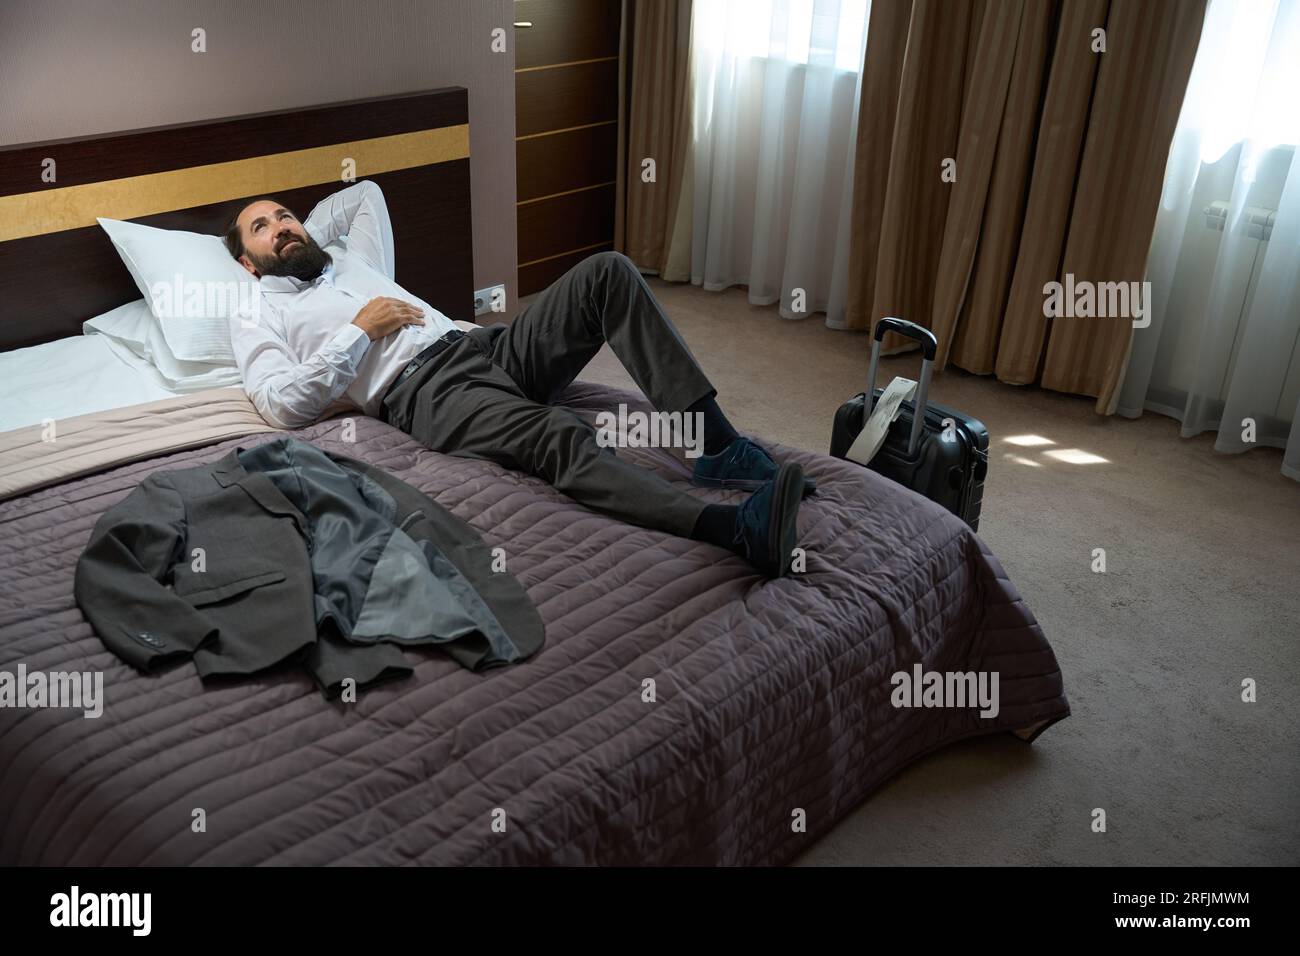 Le voyageur seul s'est allongé pour se reposer sur des oreillers moelleux,  la chambre est propre et confortable Photo Stock - Alamy